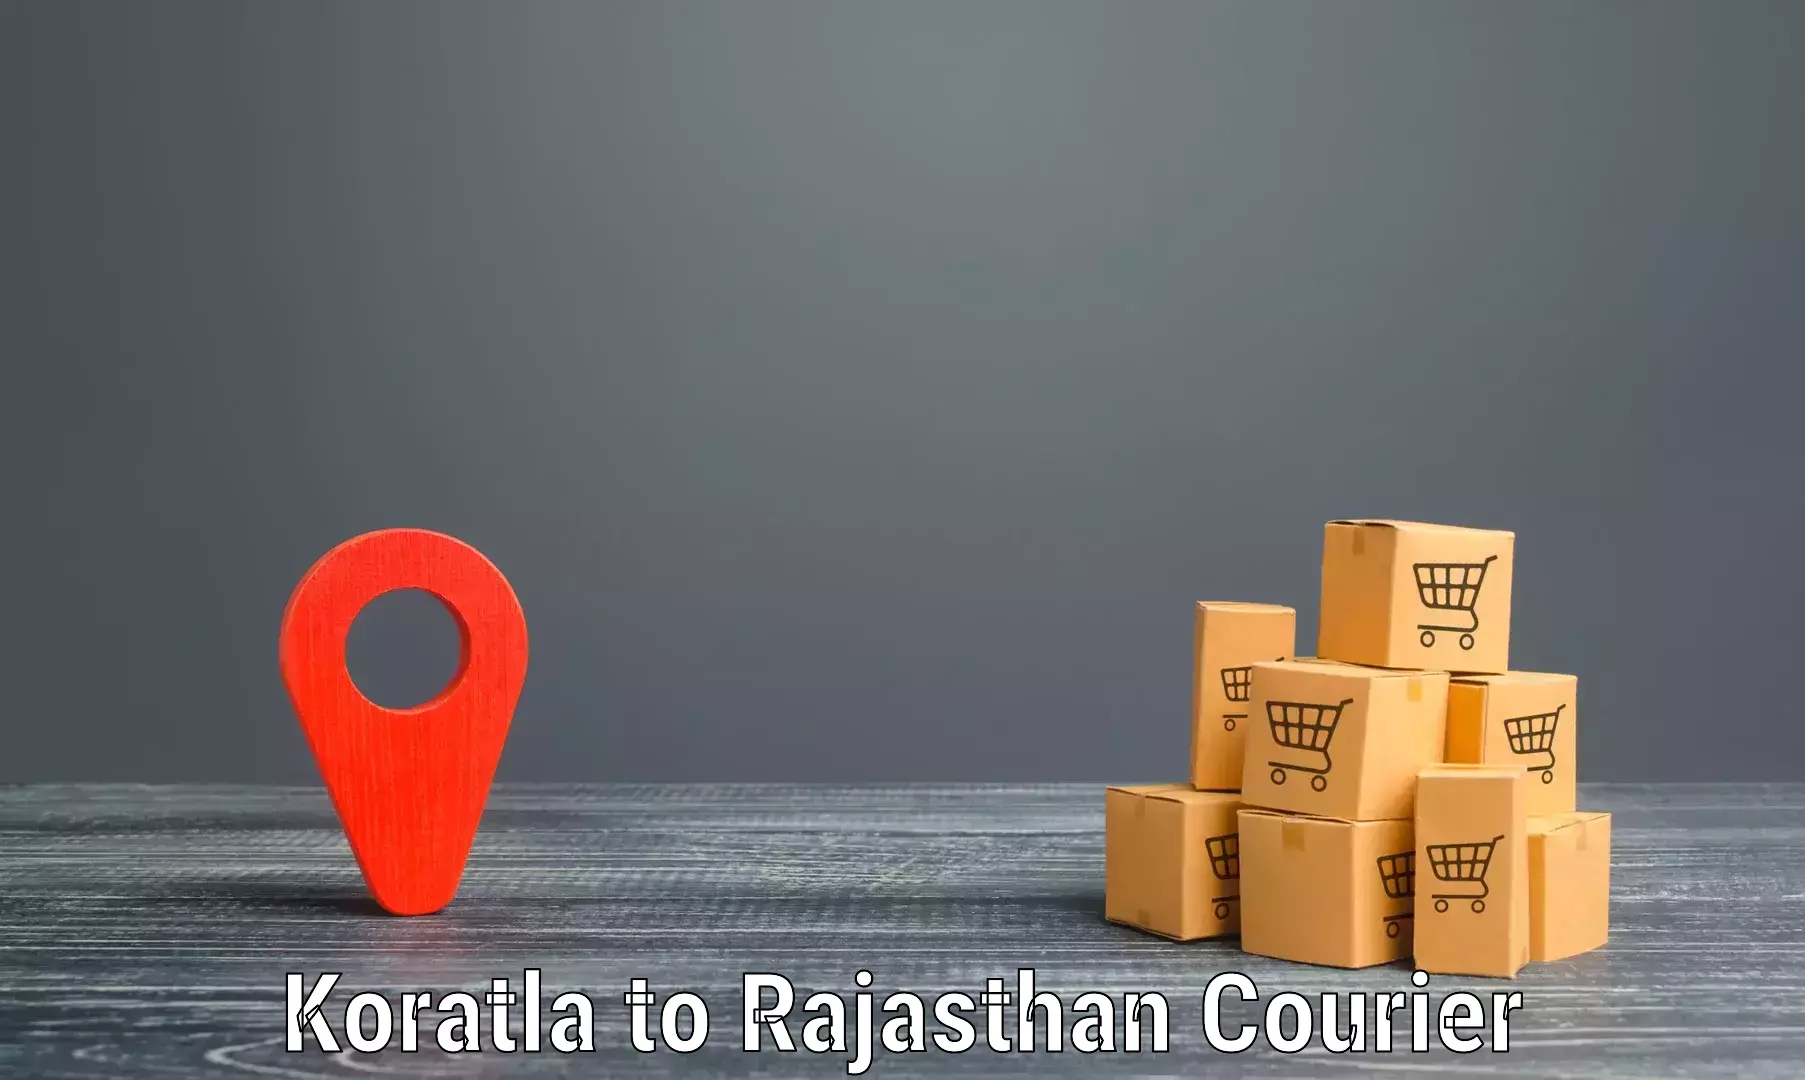 Same-day delivery solutions Koratla to Jaipur